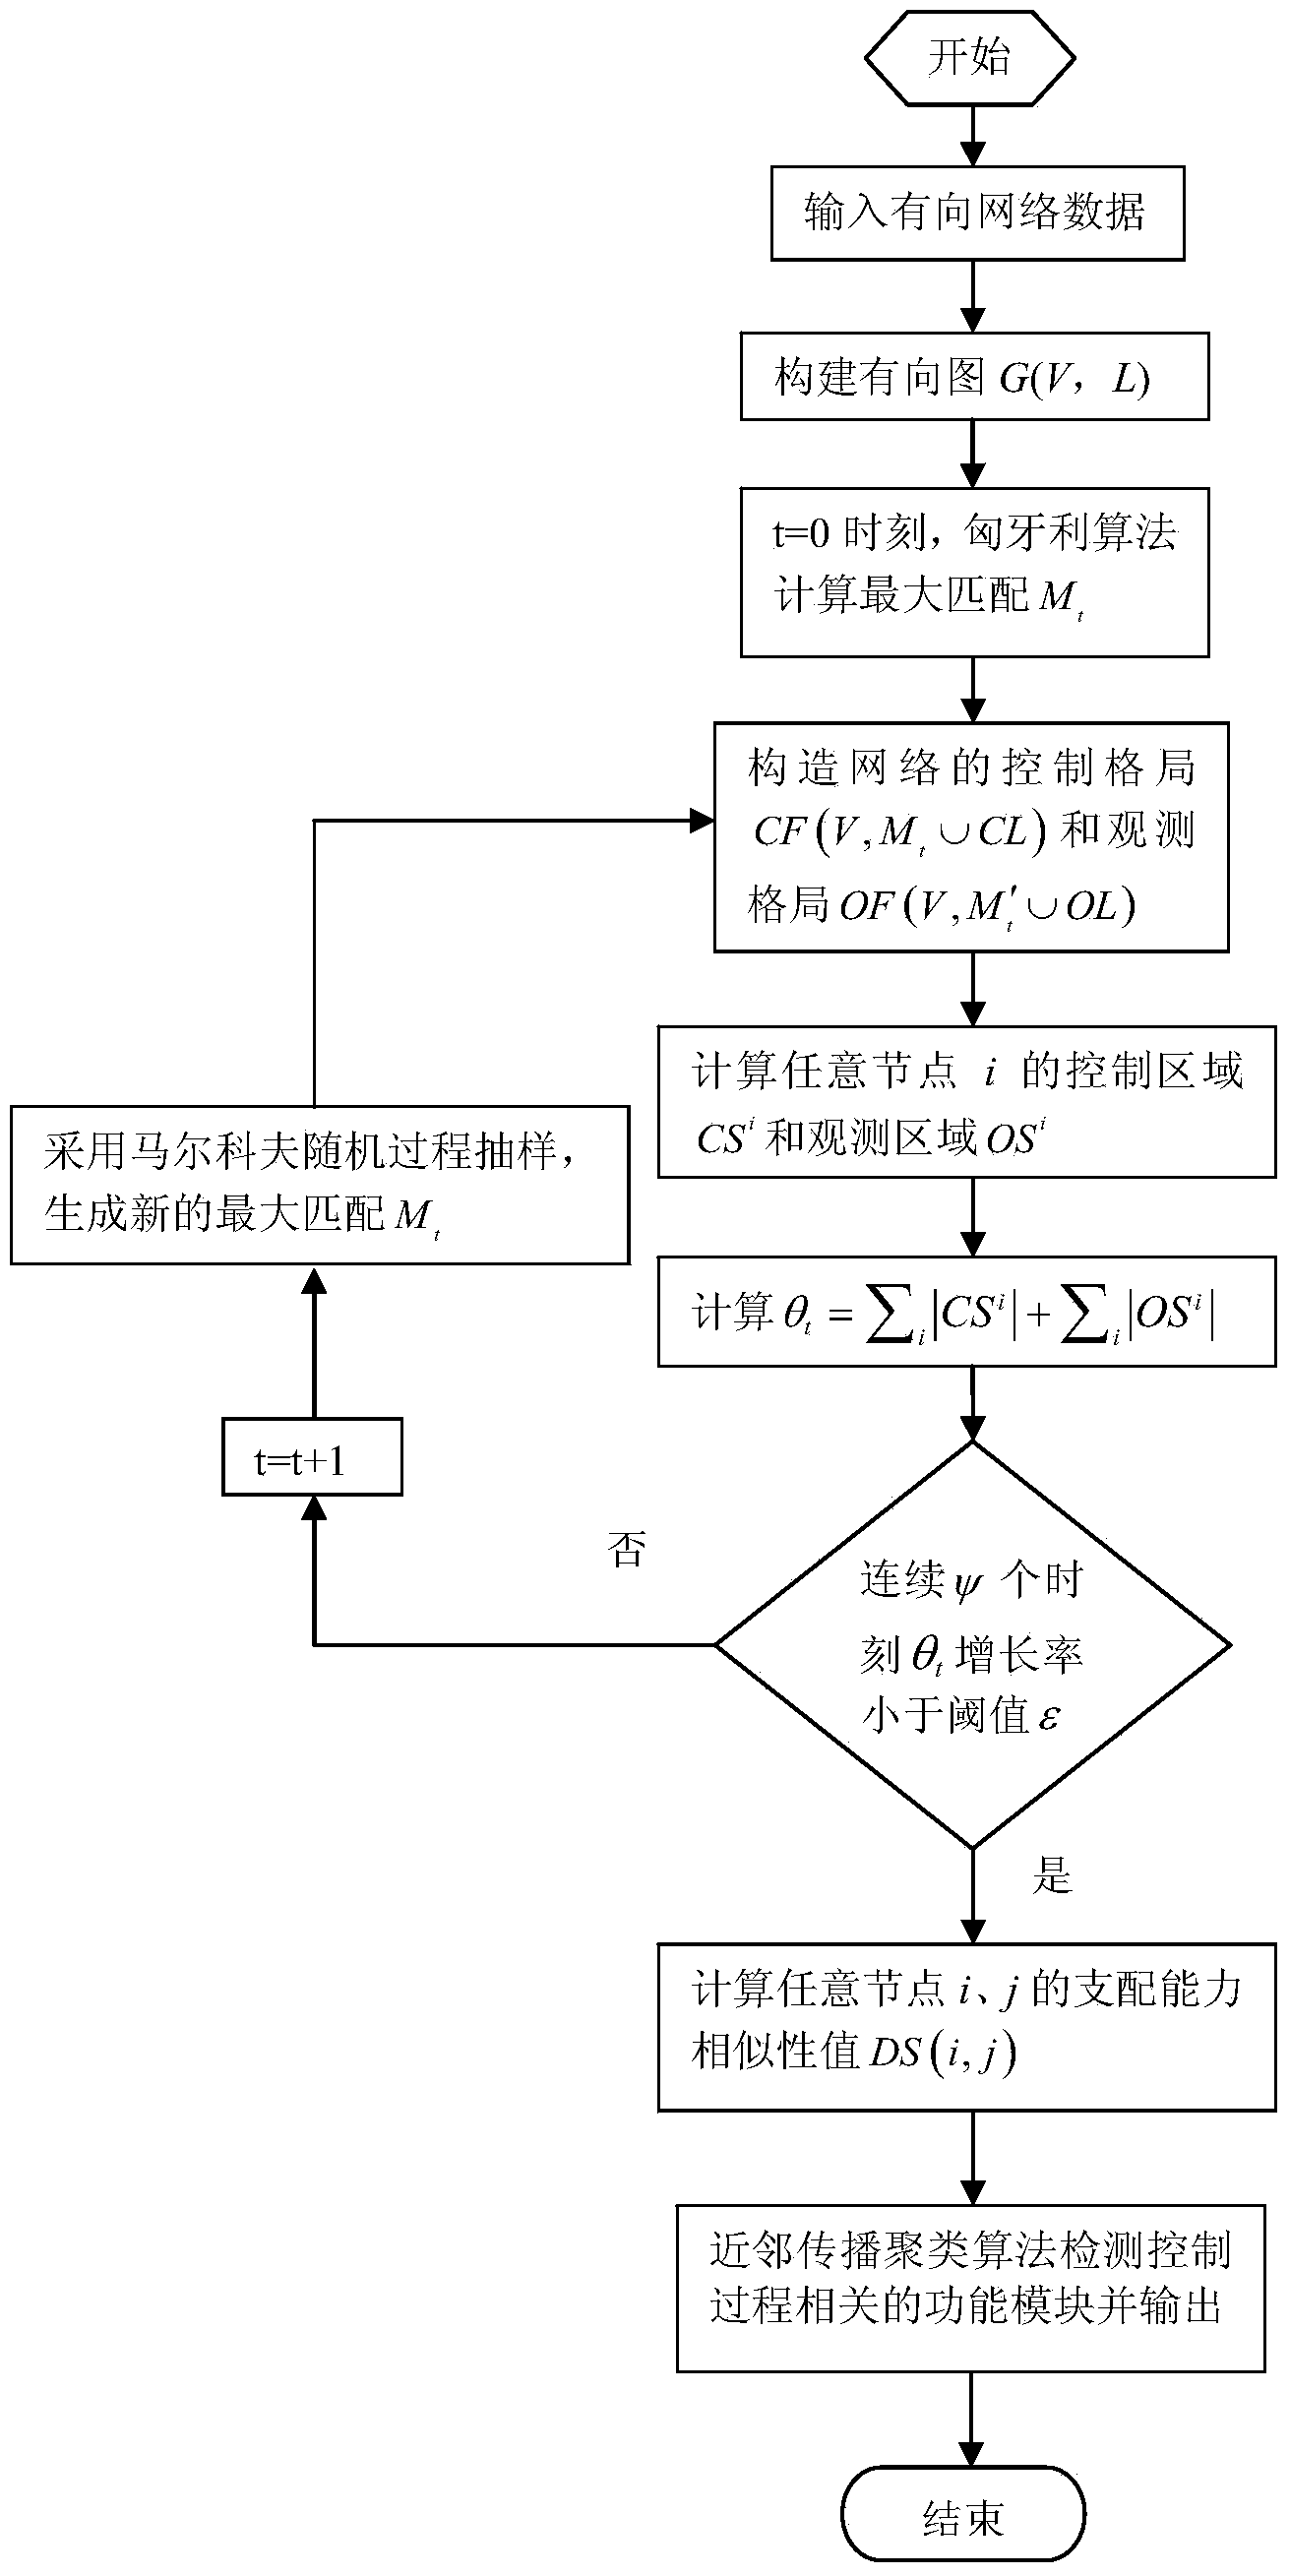 Function module detecting method based on node domination capacity similarity